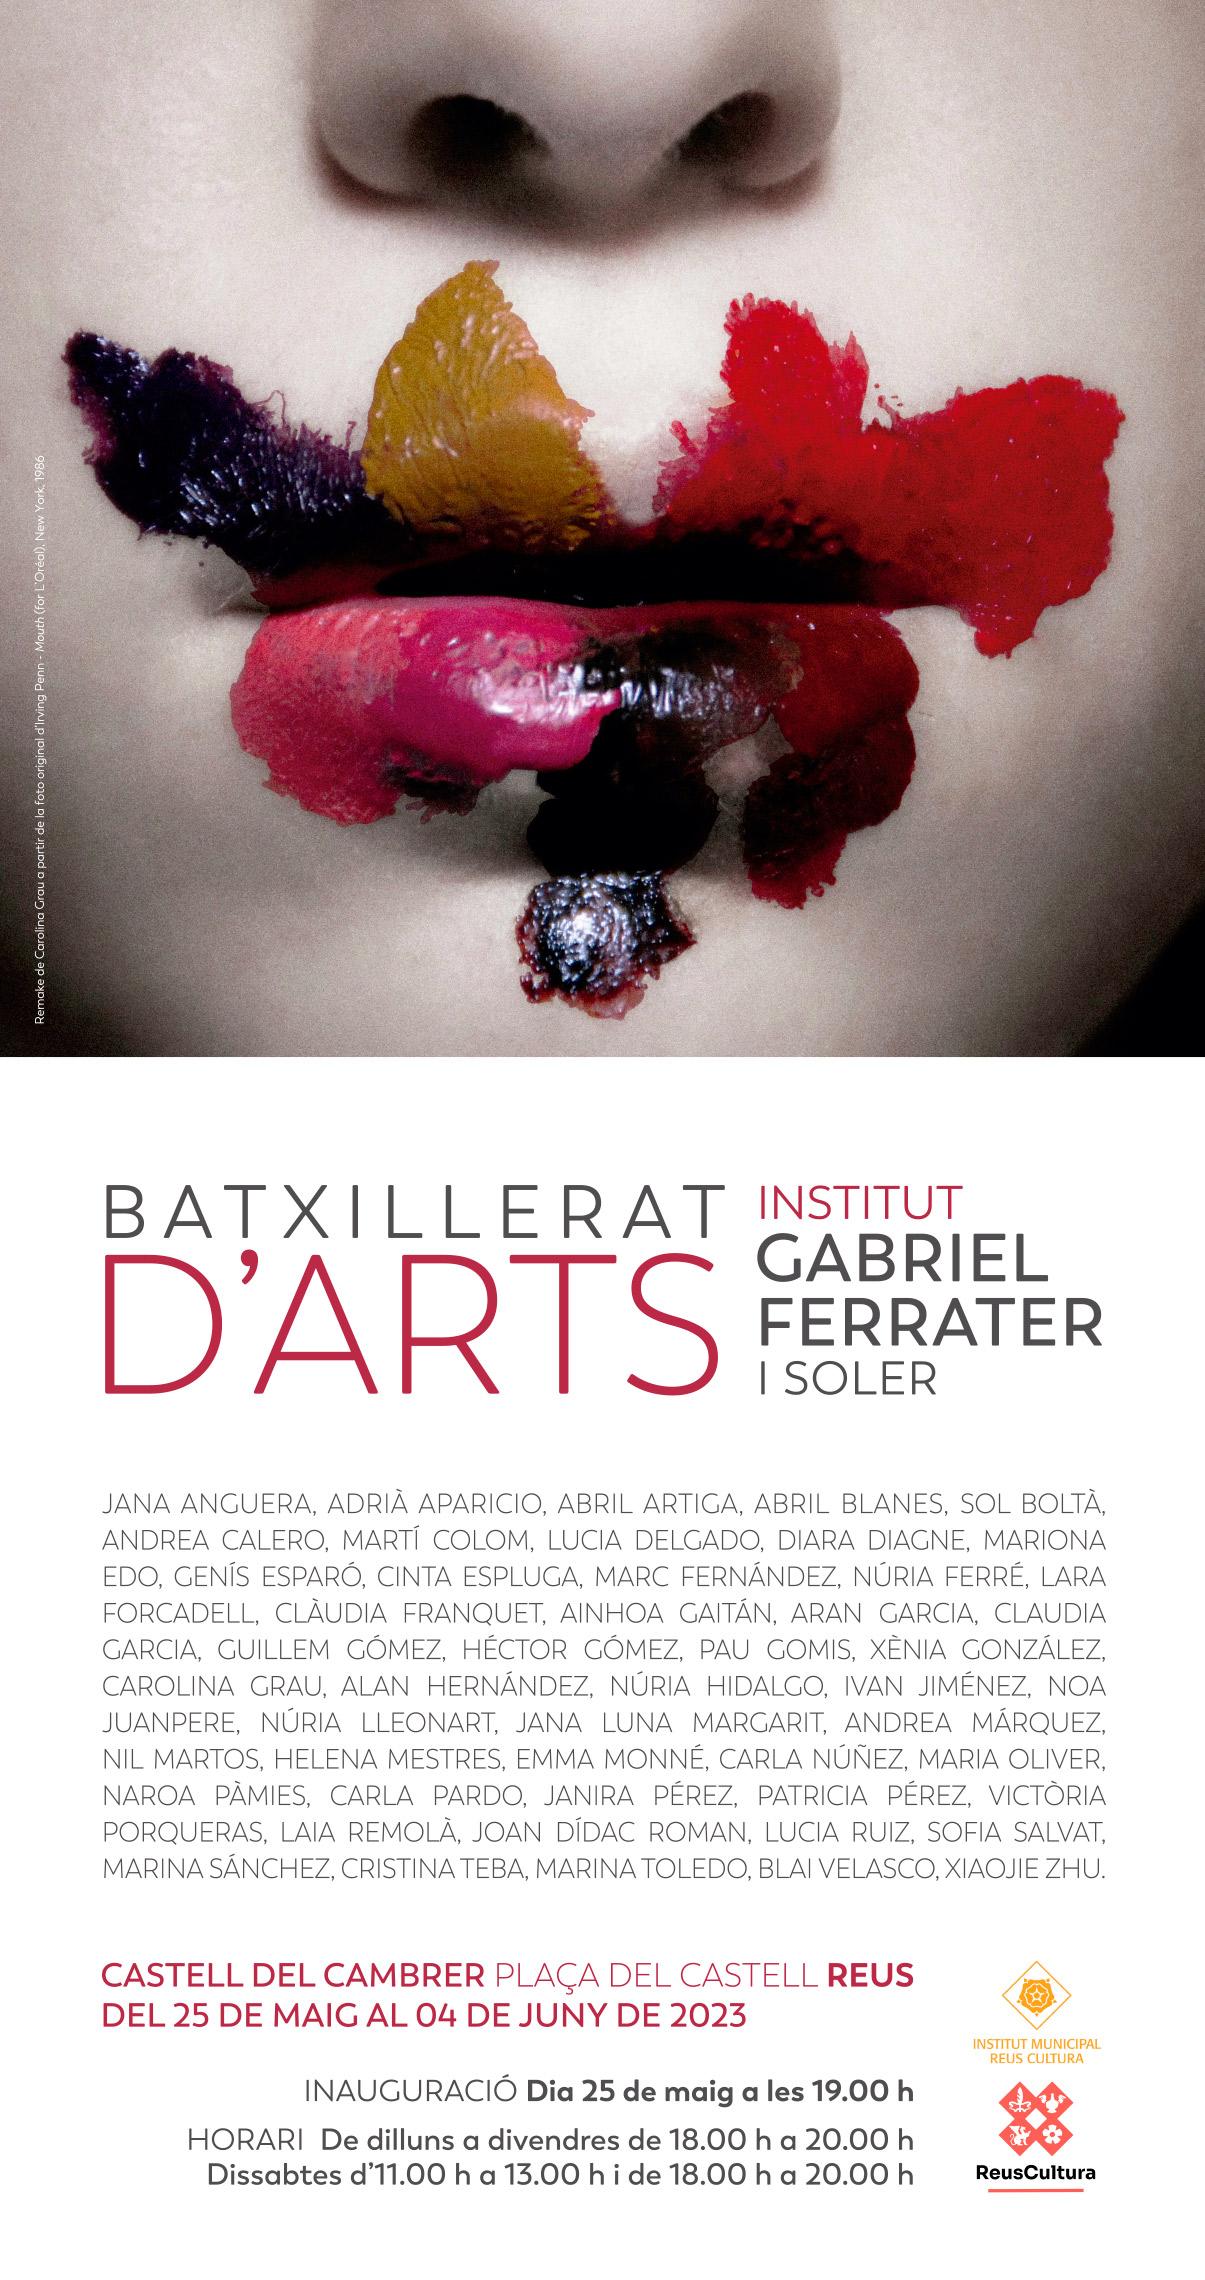 Inauguració exposició - Batxillerat d'Arts - Institut Gabriel Ferrater i Soler 